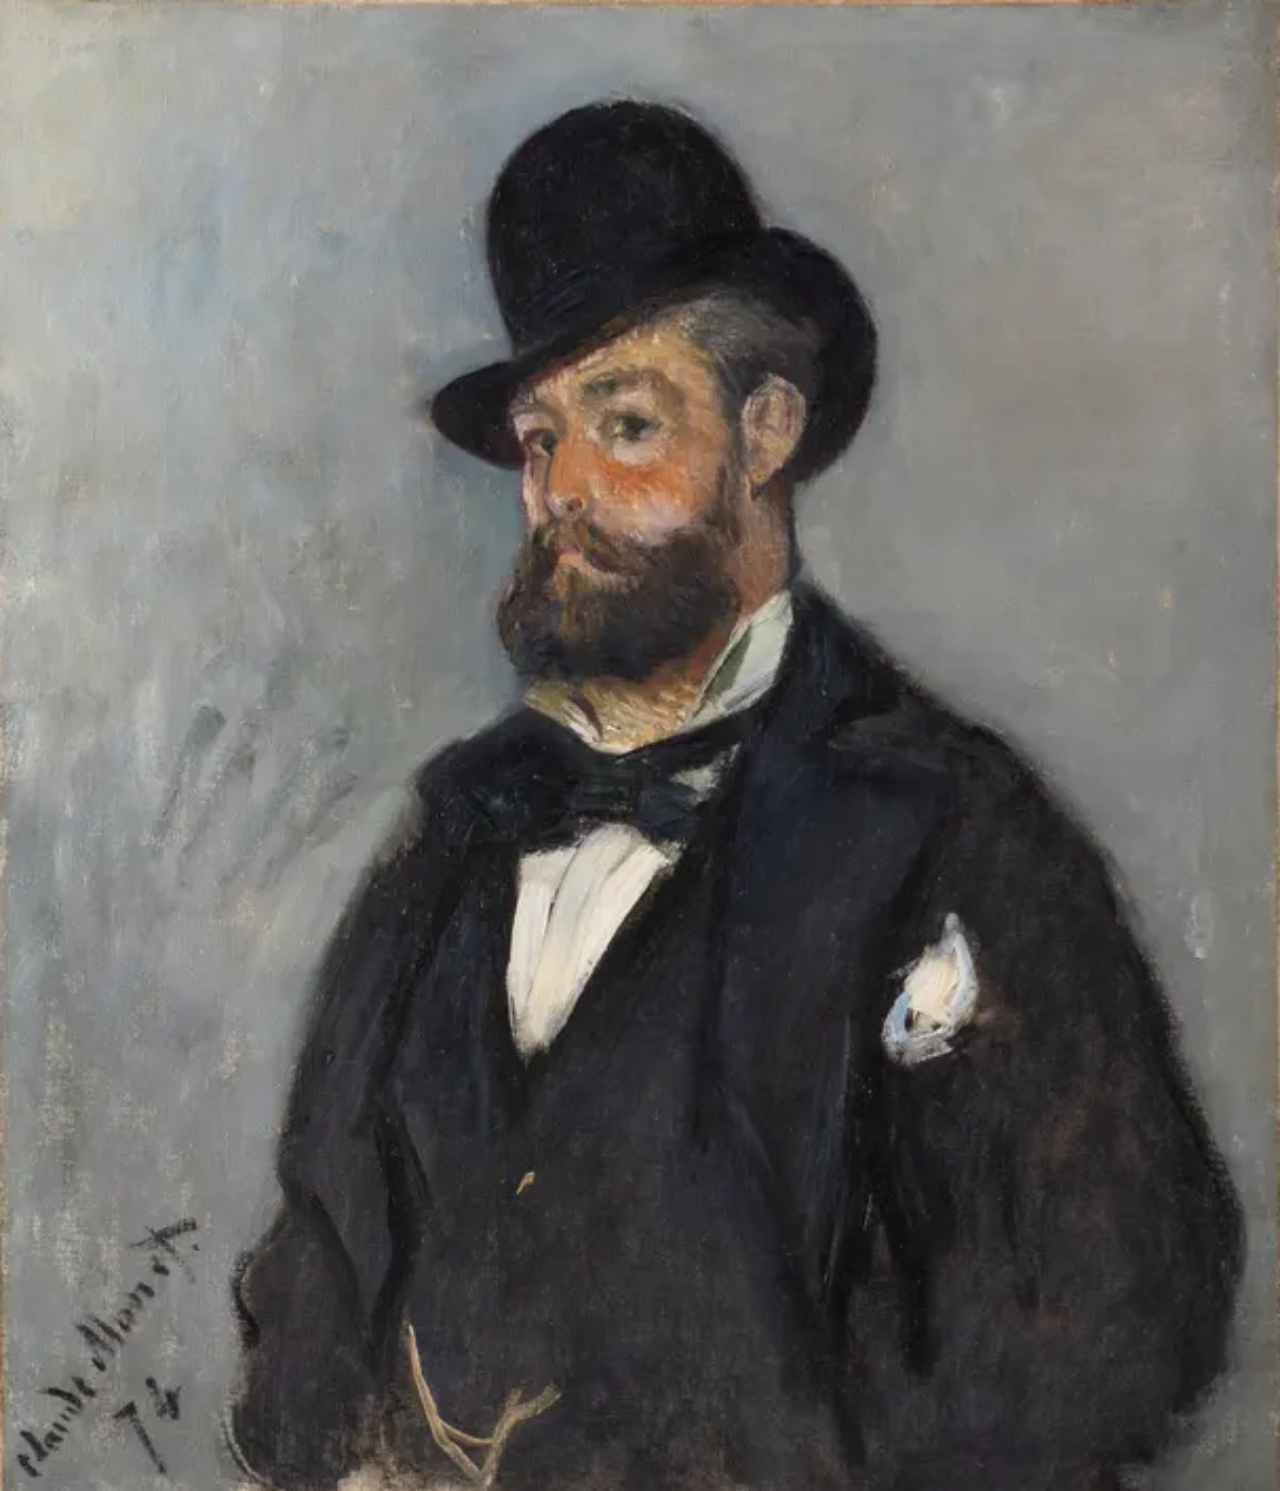 Quadro retratando Léon Monet, pintado por Claude Monet em 1874